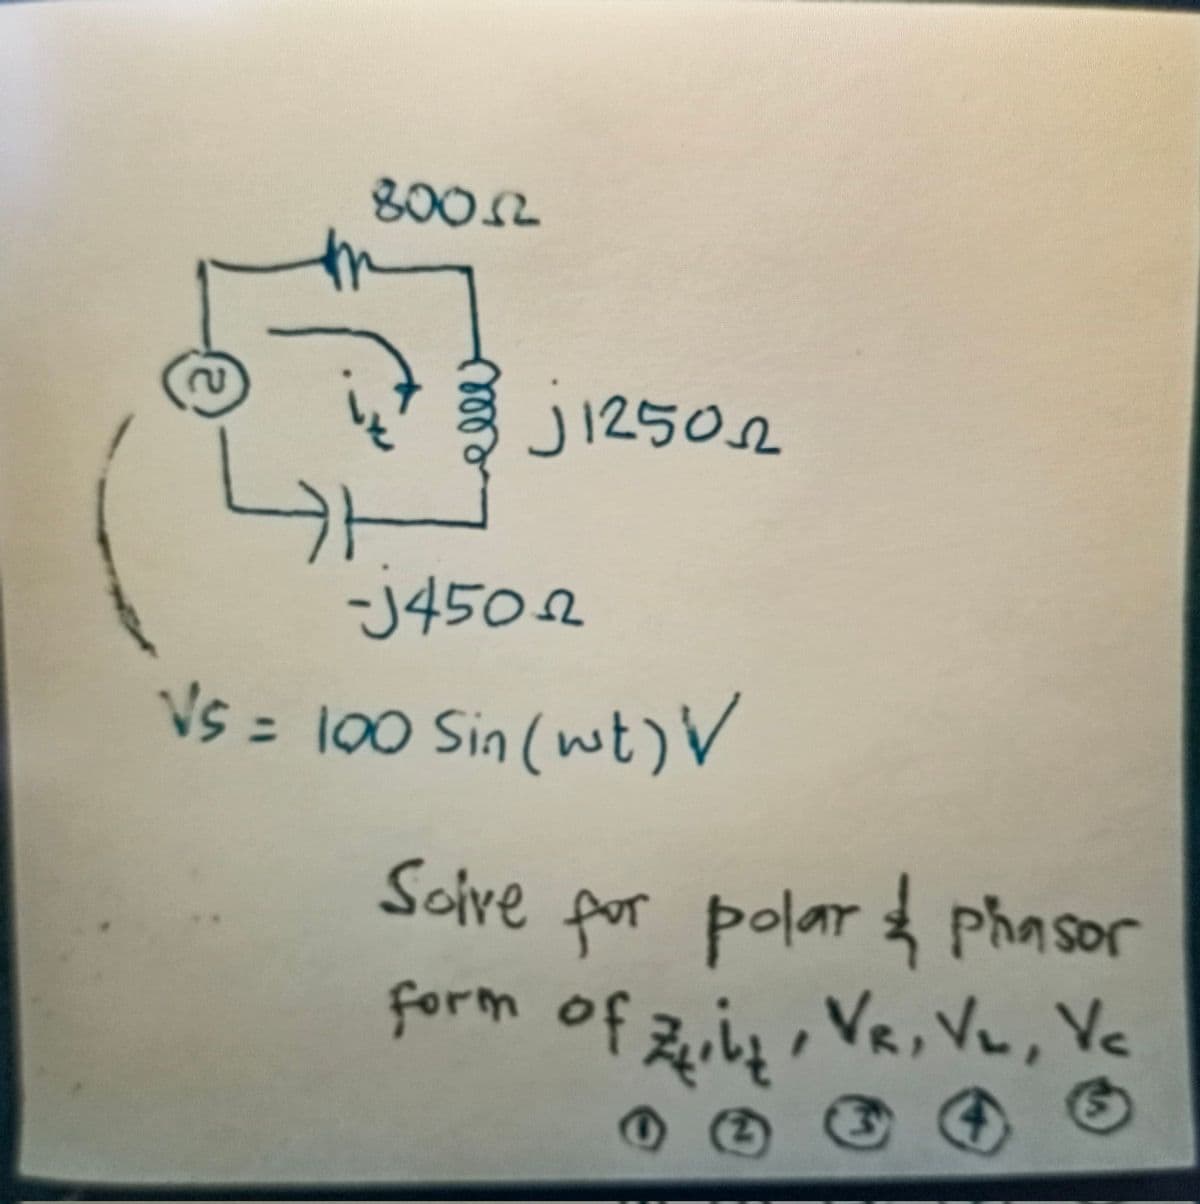 800.2
J12502
-J4502
Vs = 100 Sin (wt) V
Soire por polar phasor
&
form of Ziz, VR, V₂, Vc